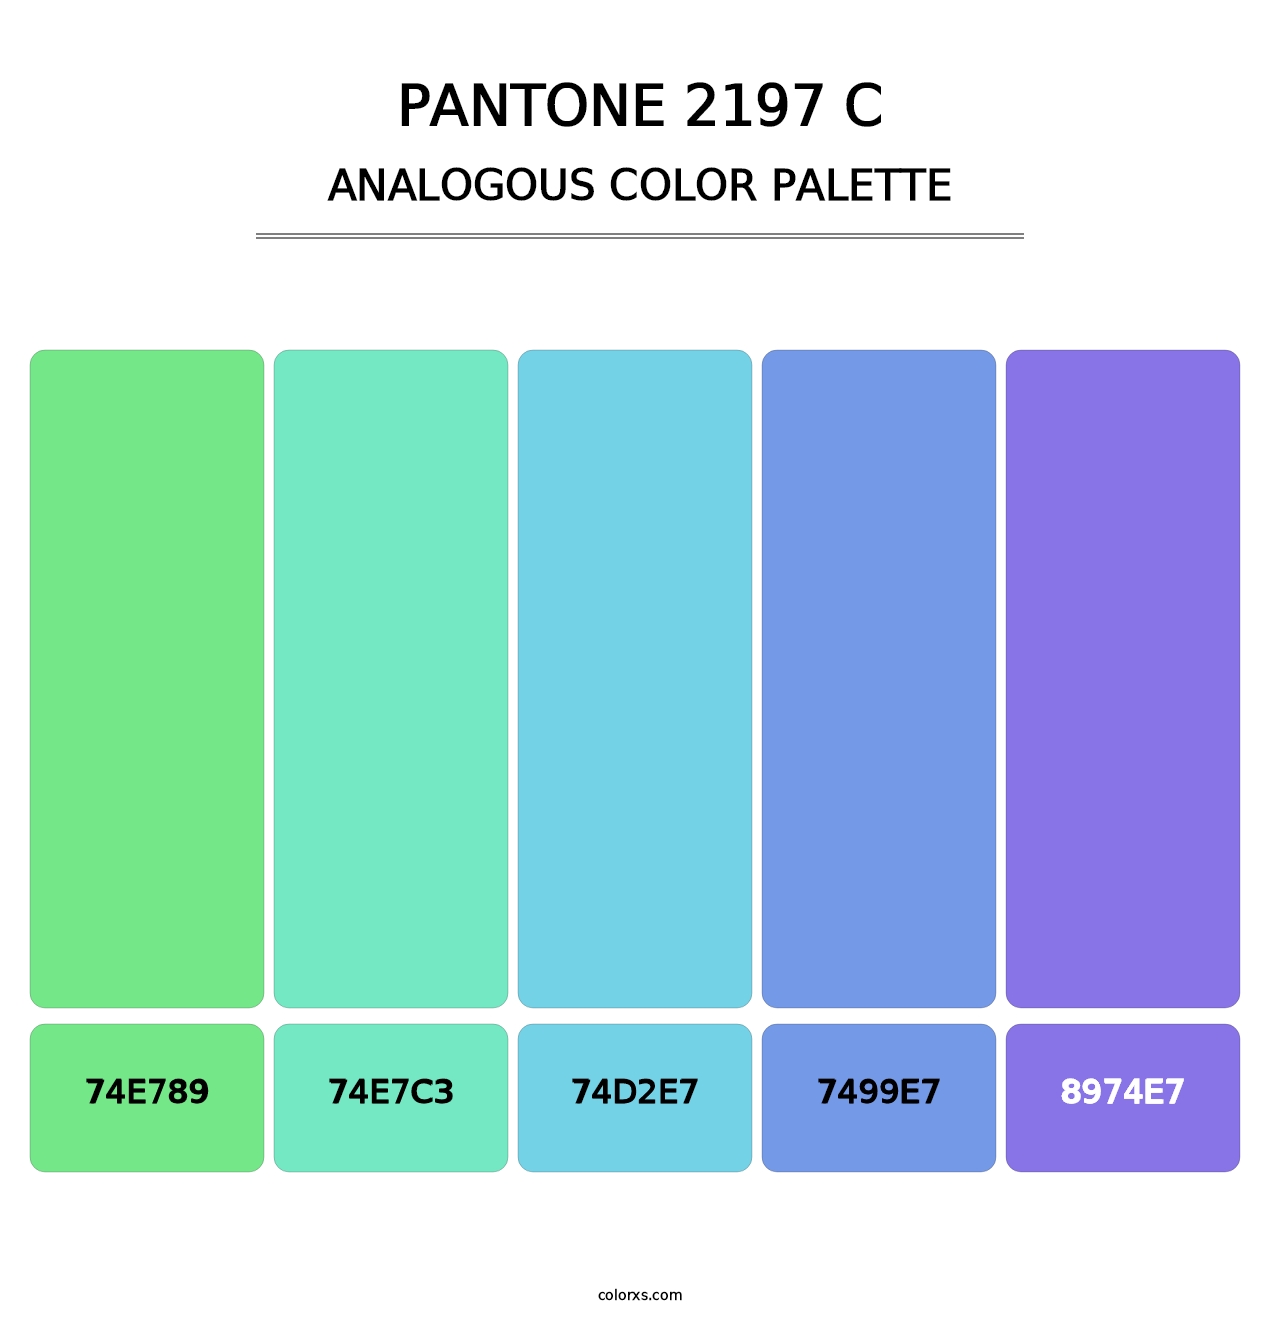 PANTONE 2197 C - Analogous Color Palette